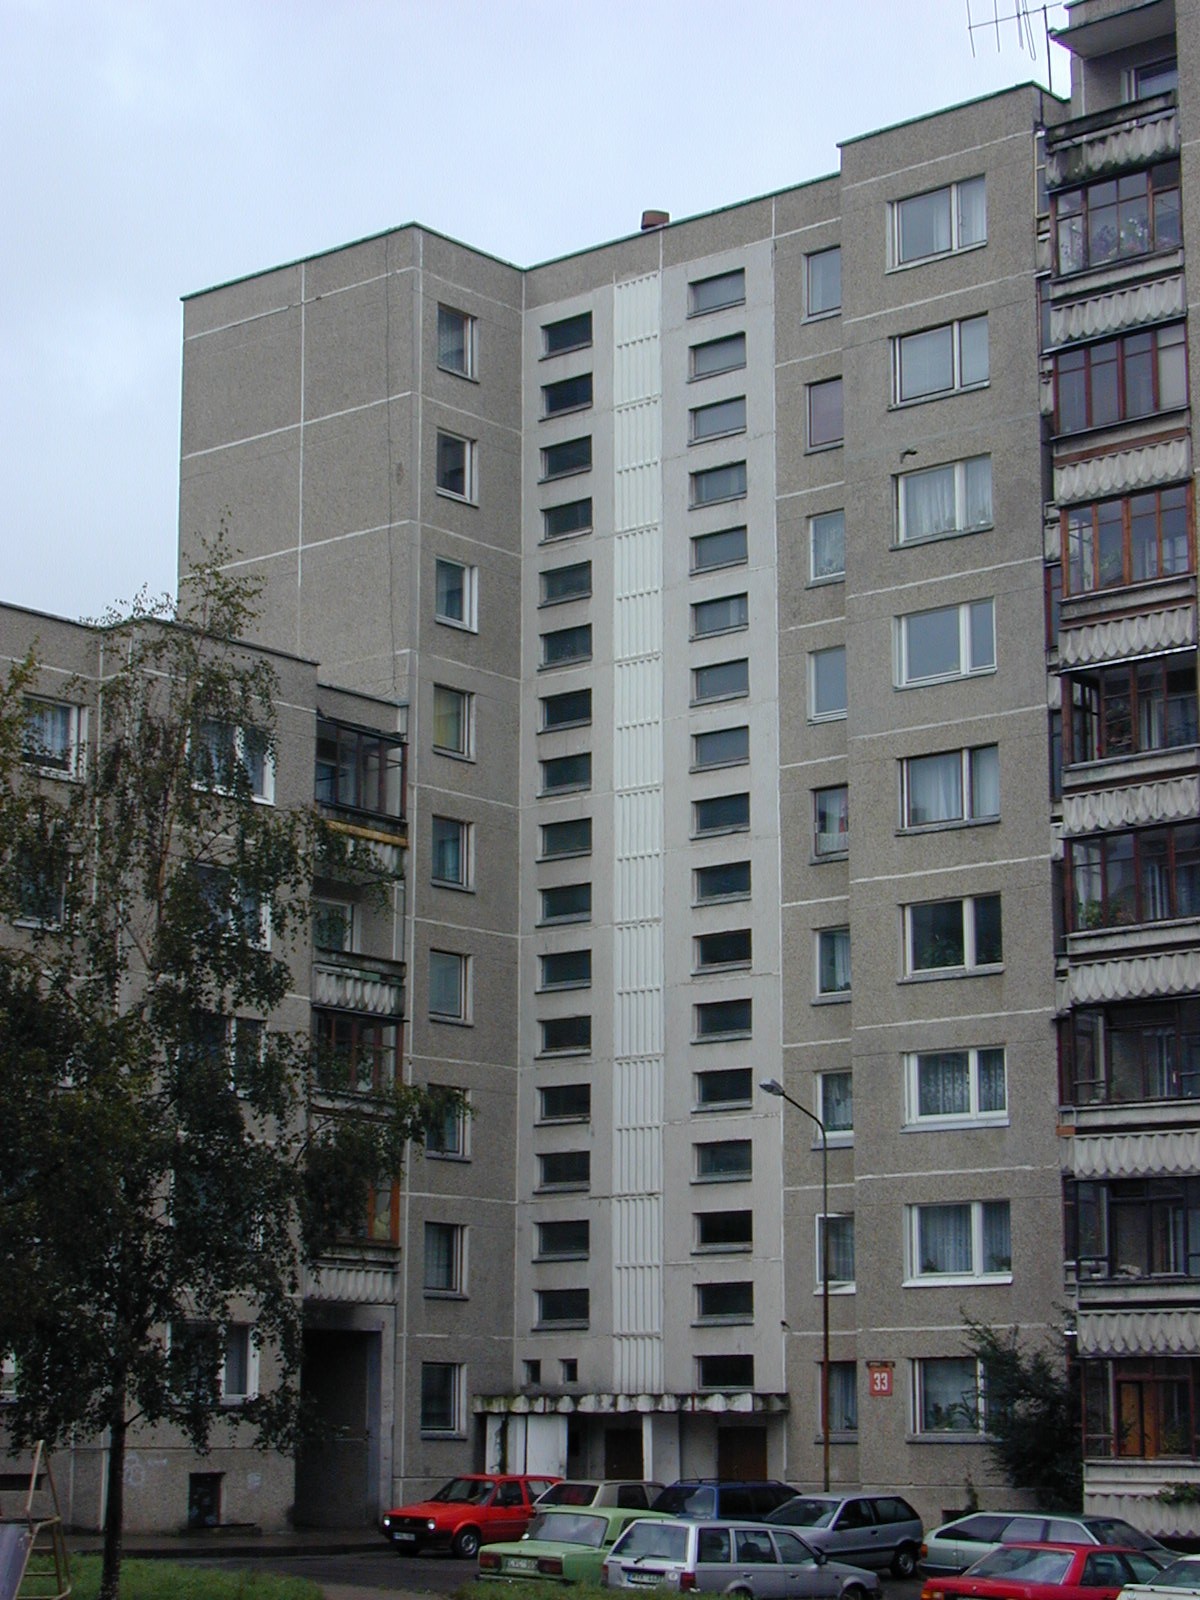 Rygos g. 33, Vilnius